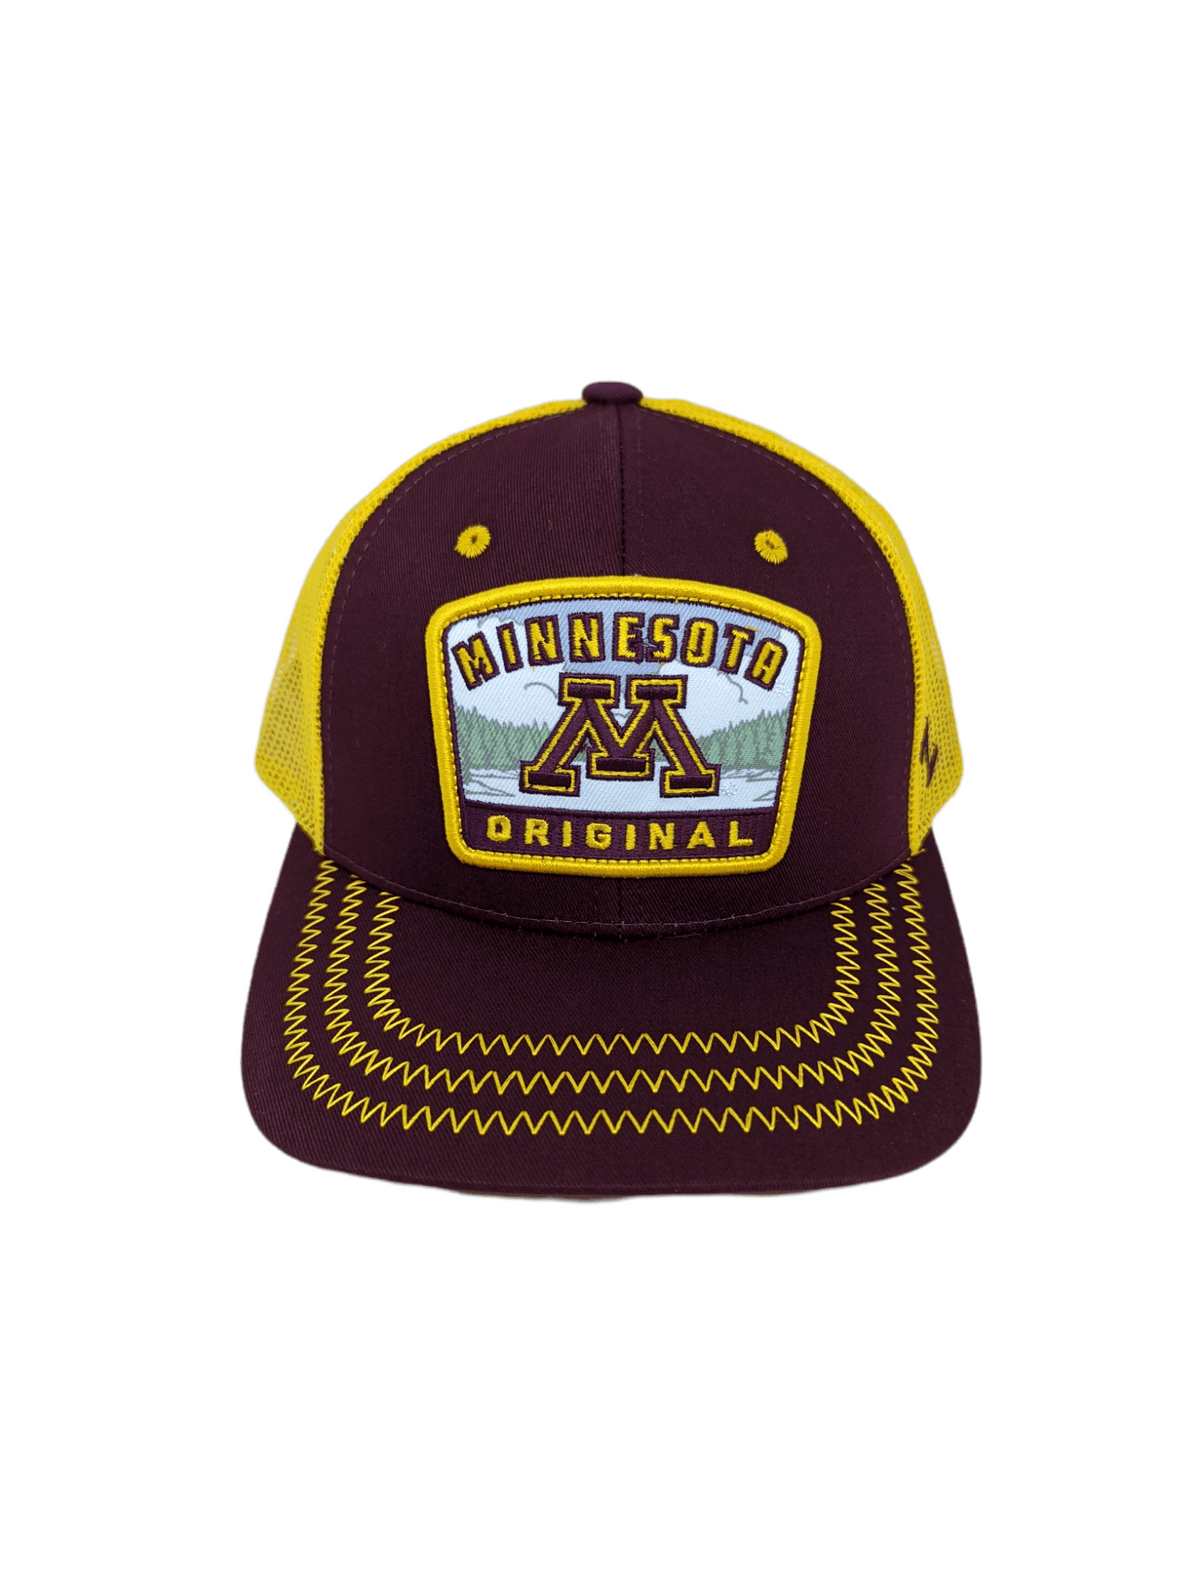 Zephyr Hats Minnesota Golden Gophers Rabble Rouser Hat